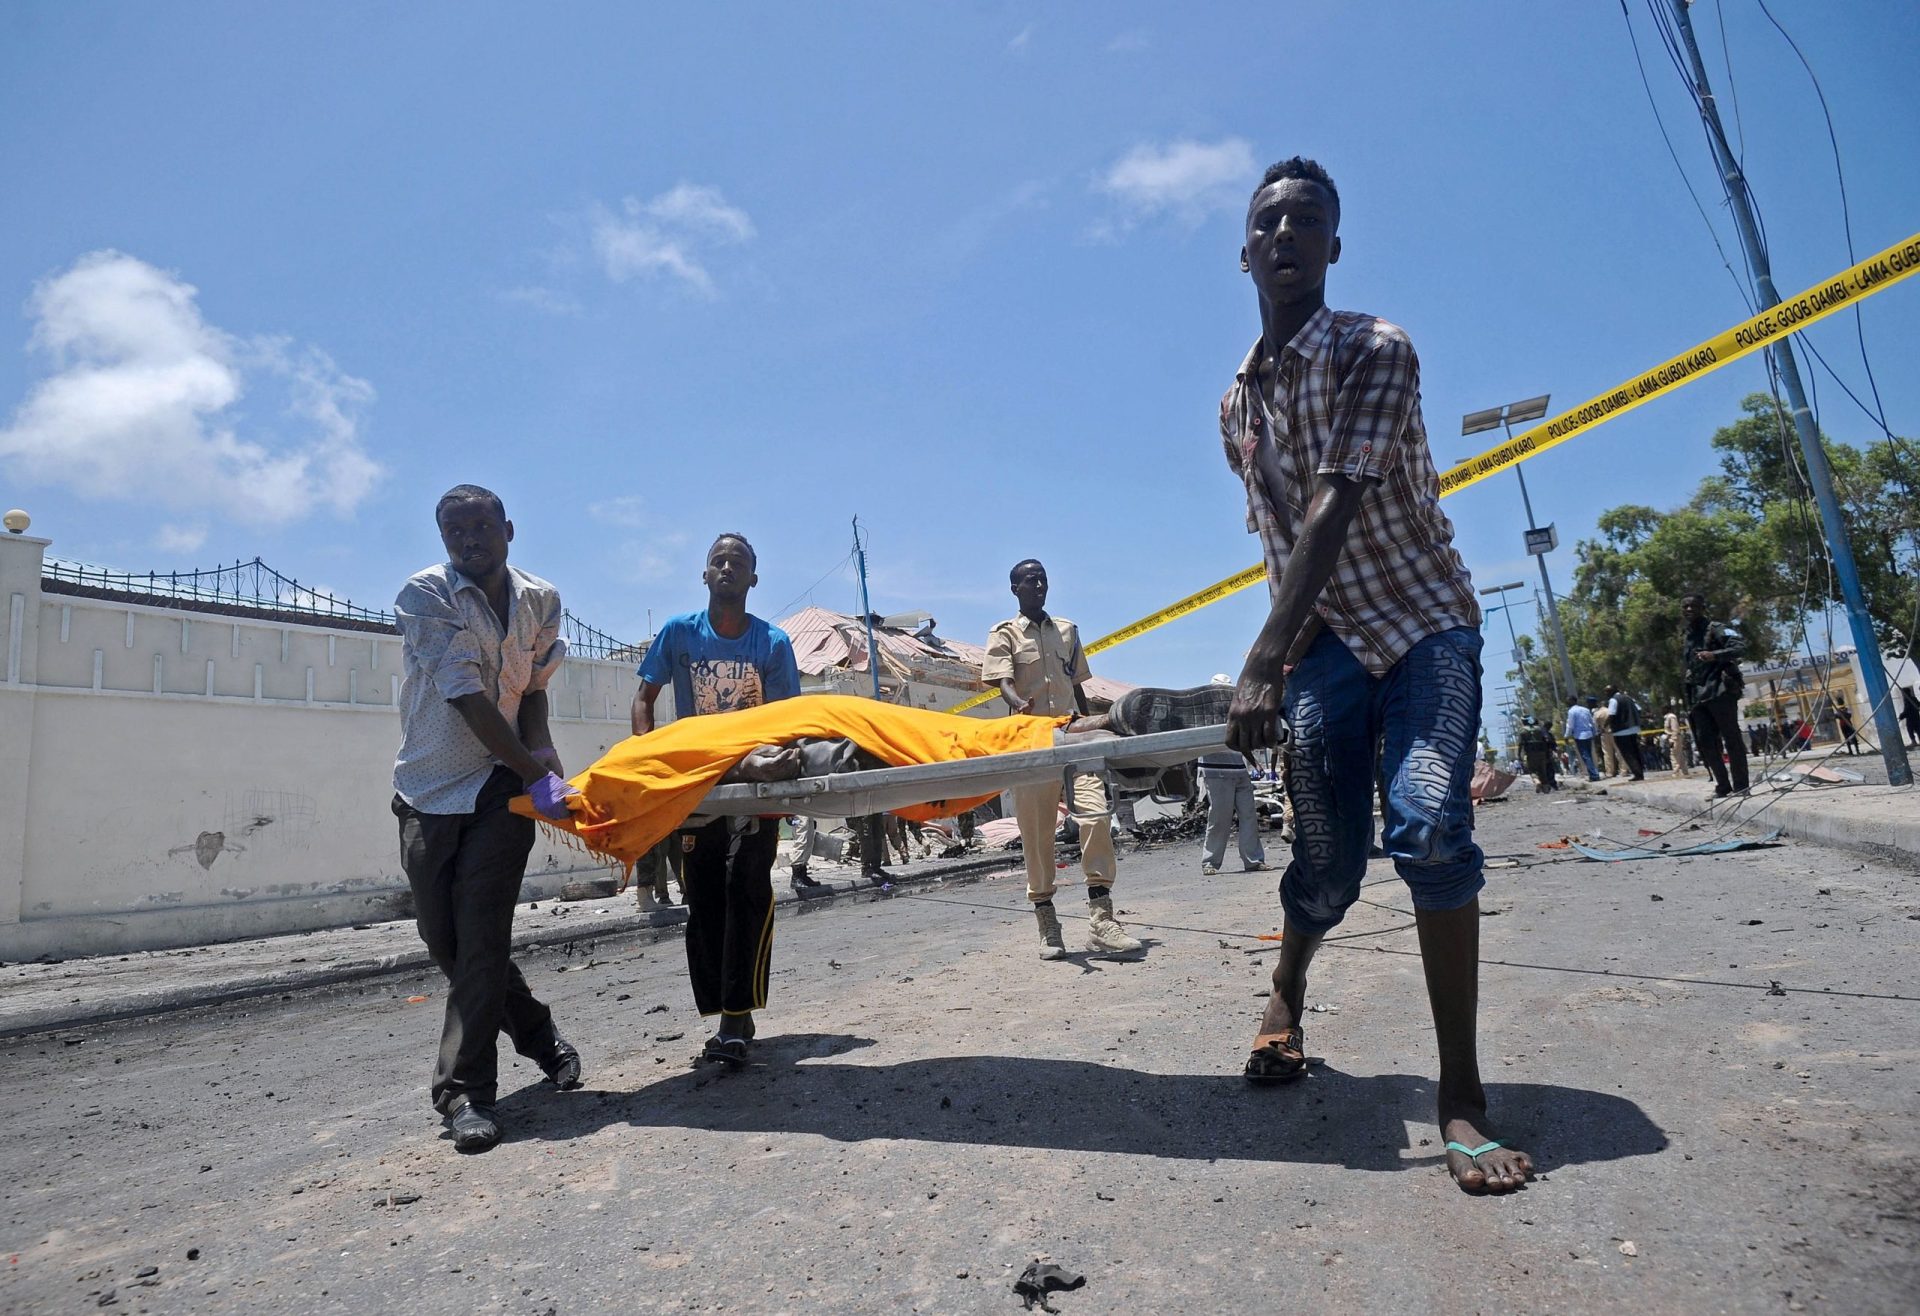 Somália. Explosão de bomba mata 20 pessoas